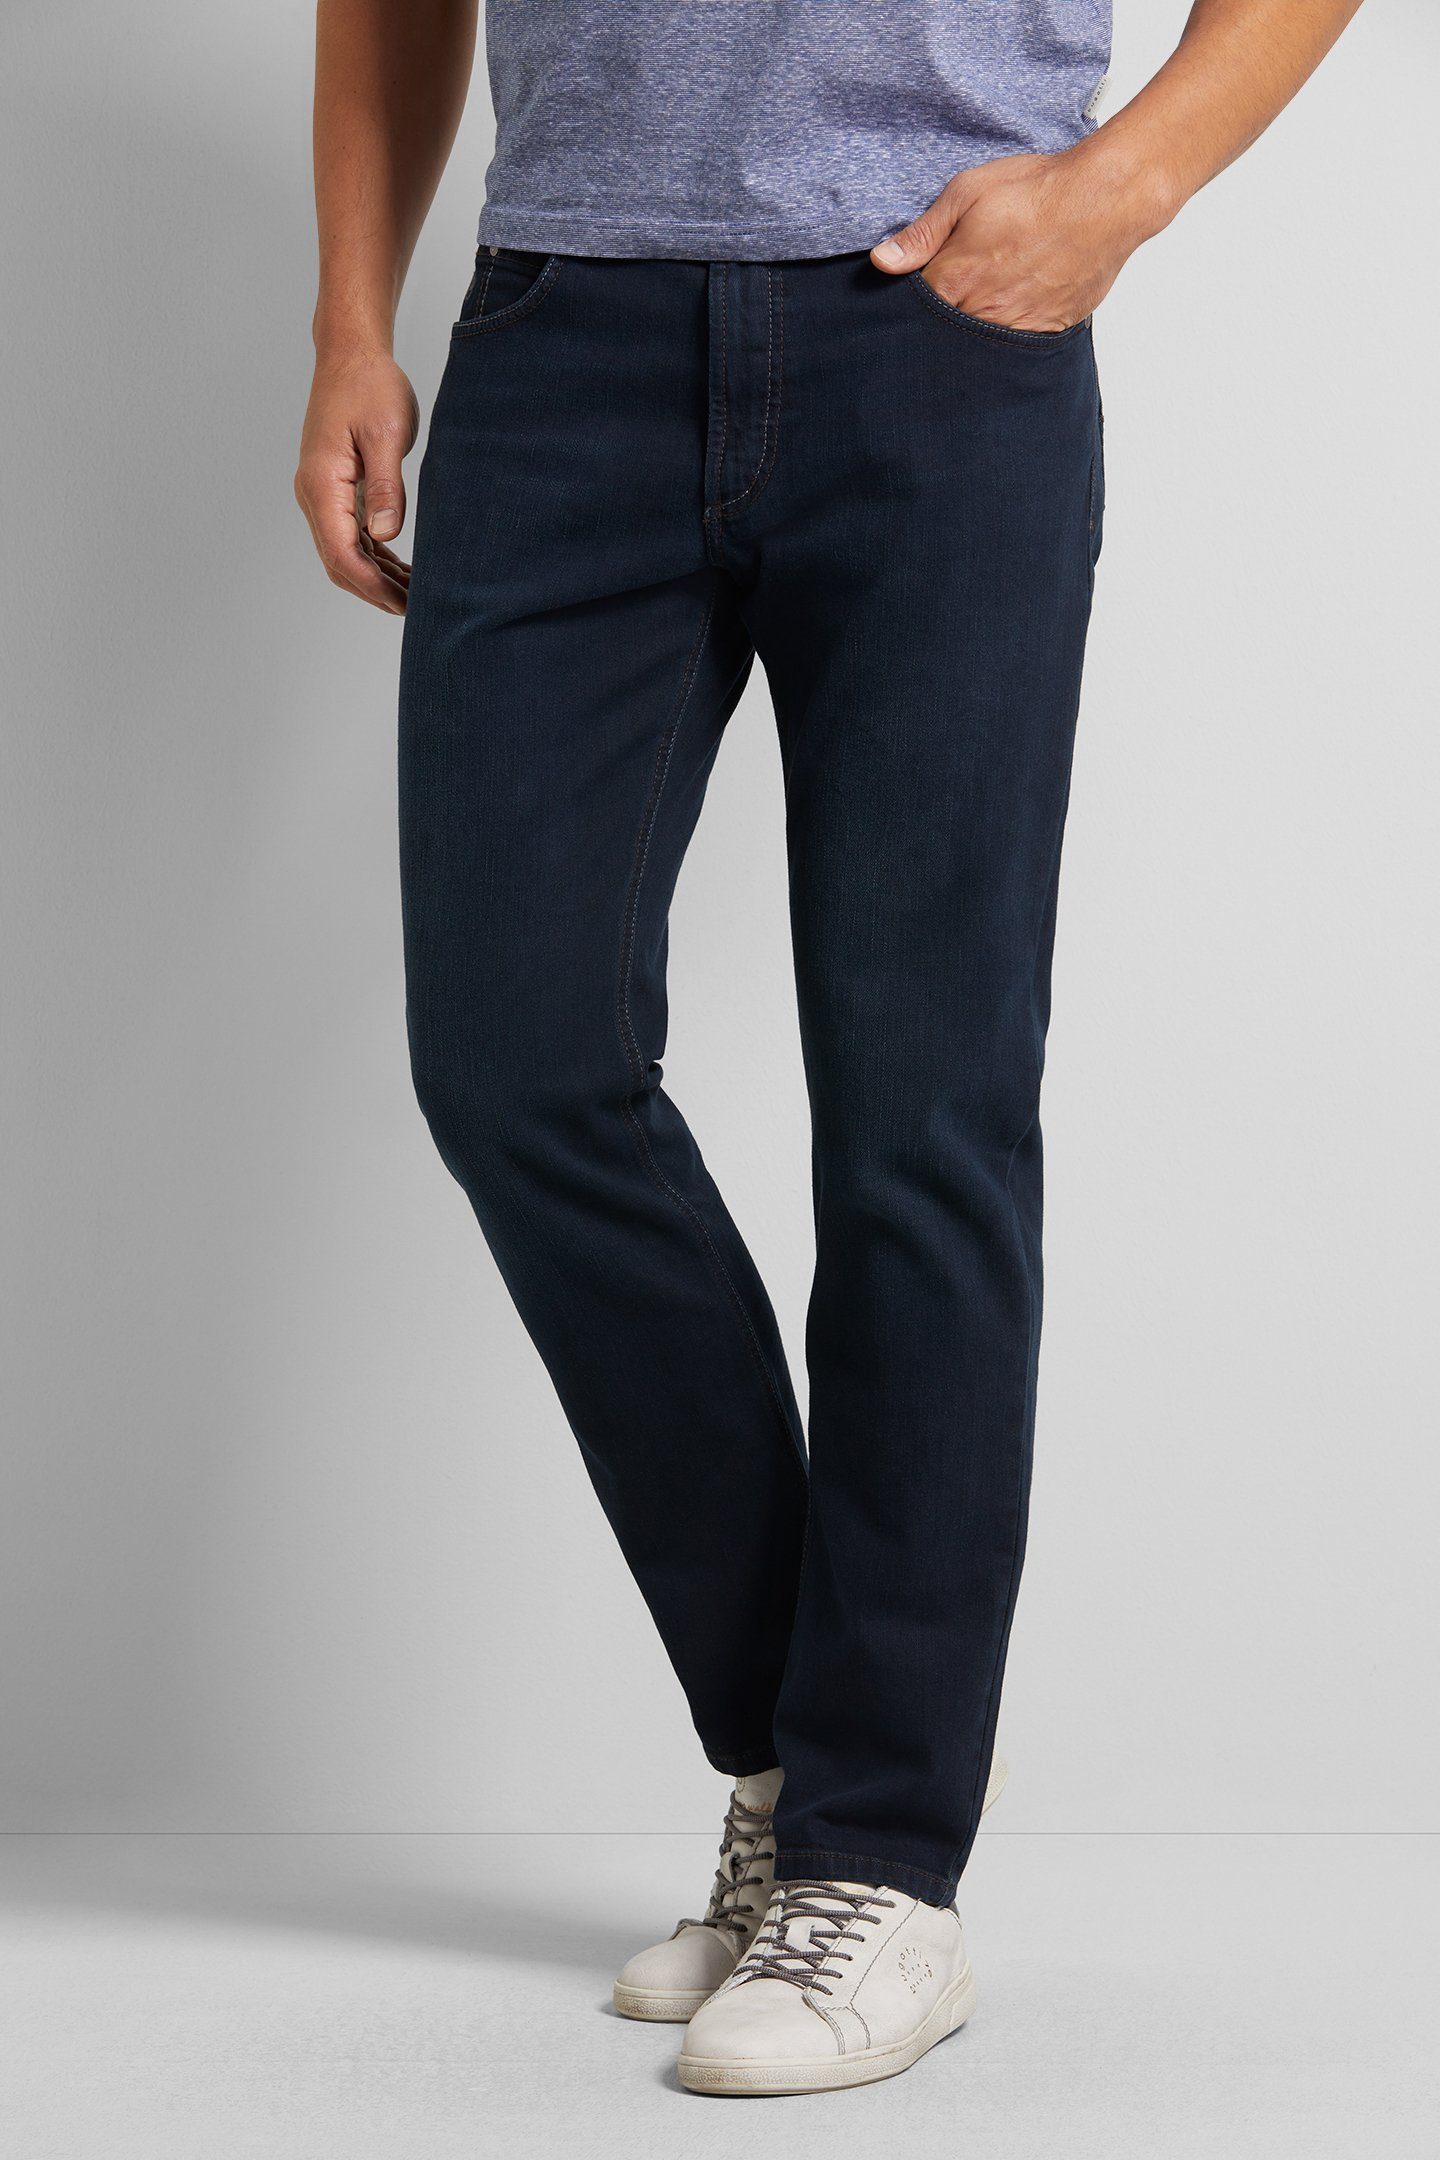 Stretch mit Comfort bugatti 5-Pocket-Jeans blau-schwarz